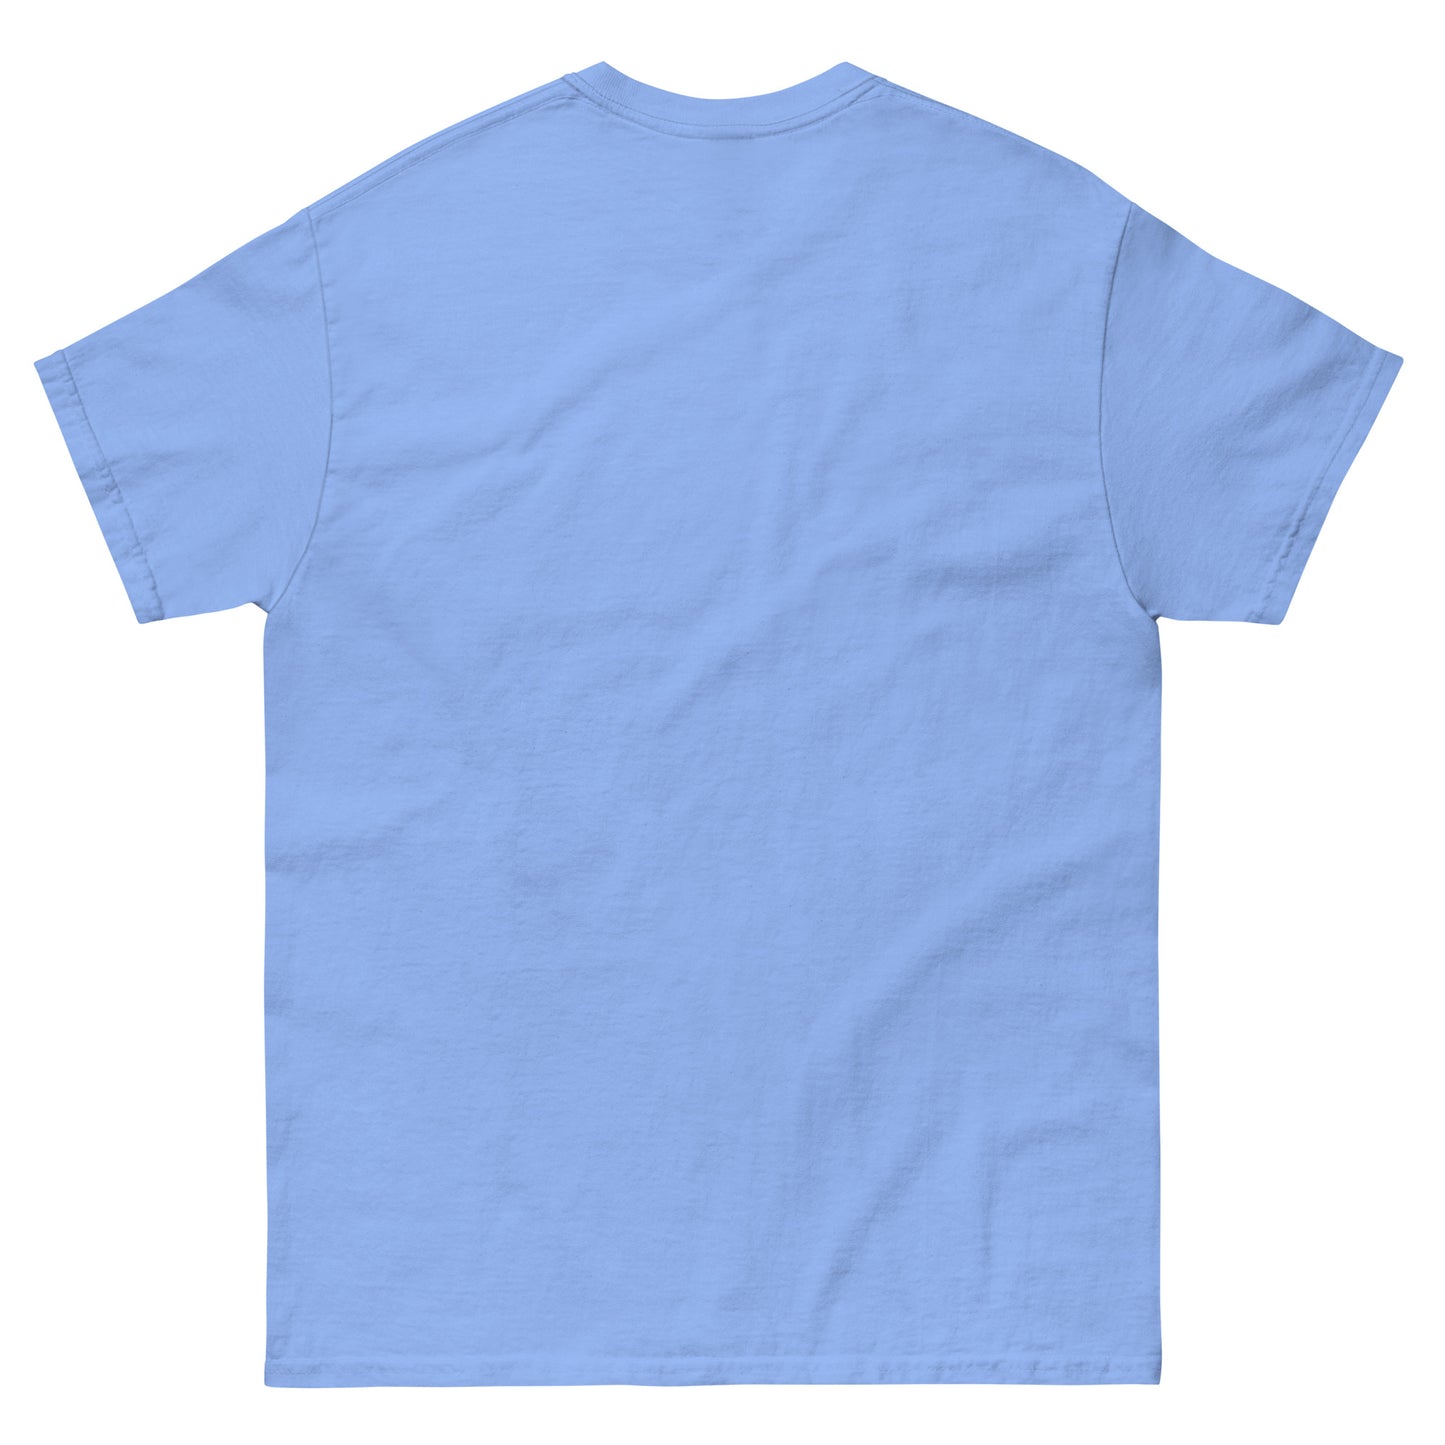 Plankhawk T-Shirt